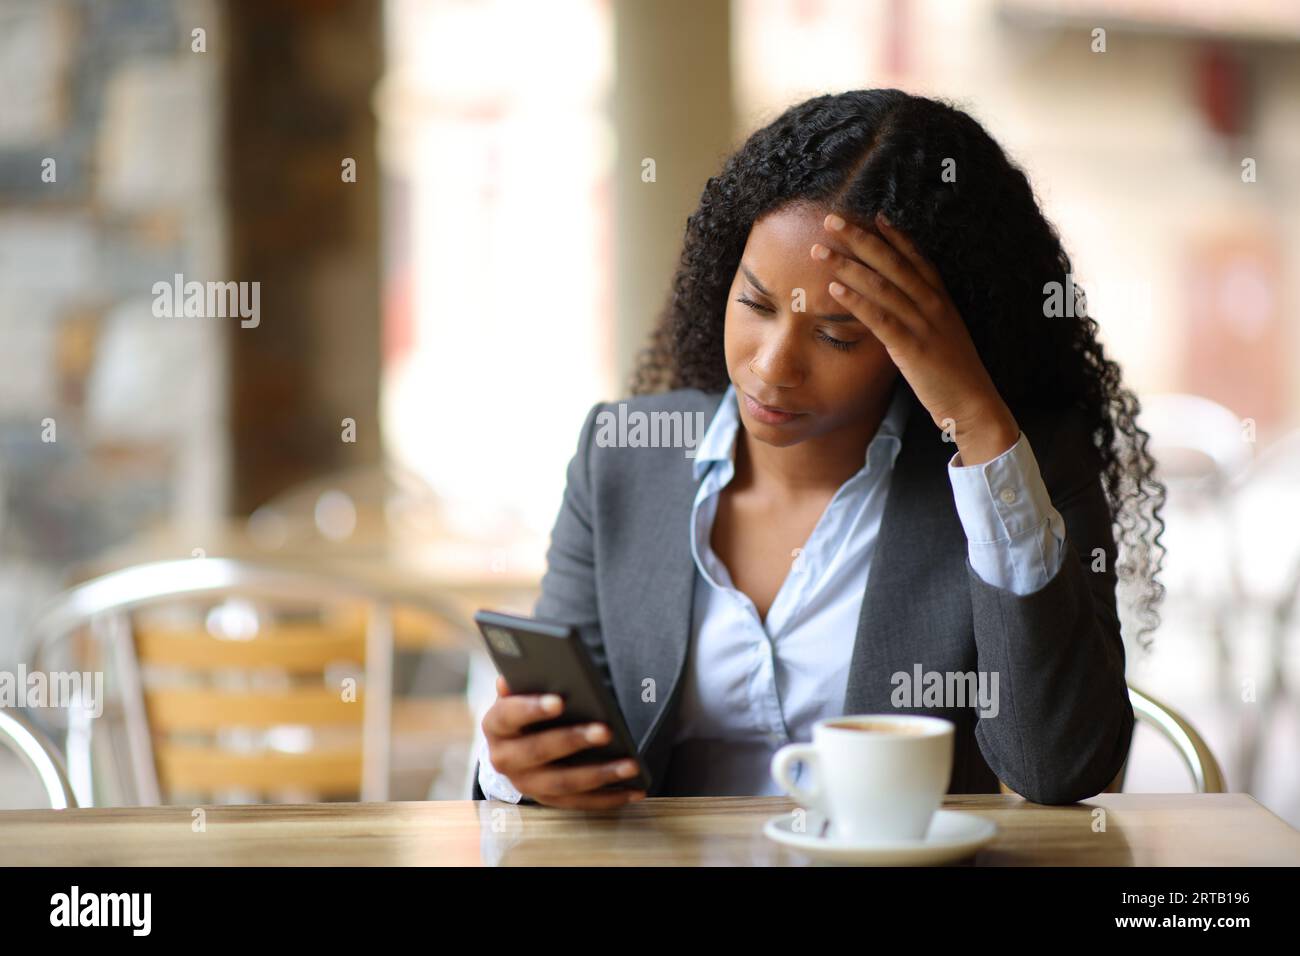 Empresaria negra preocupada que comprueba las malas noticias por teléfono en una terraza del bar Foto de stock